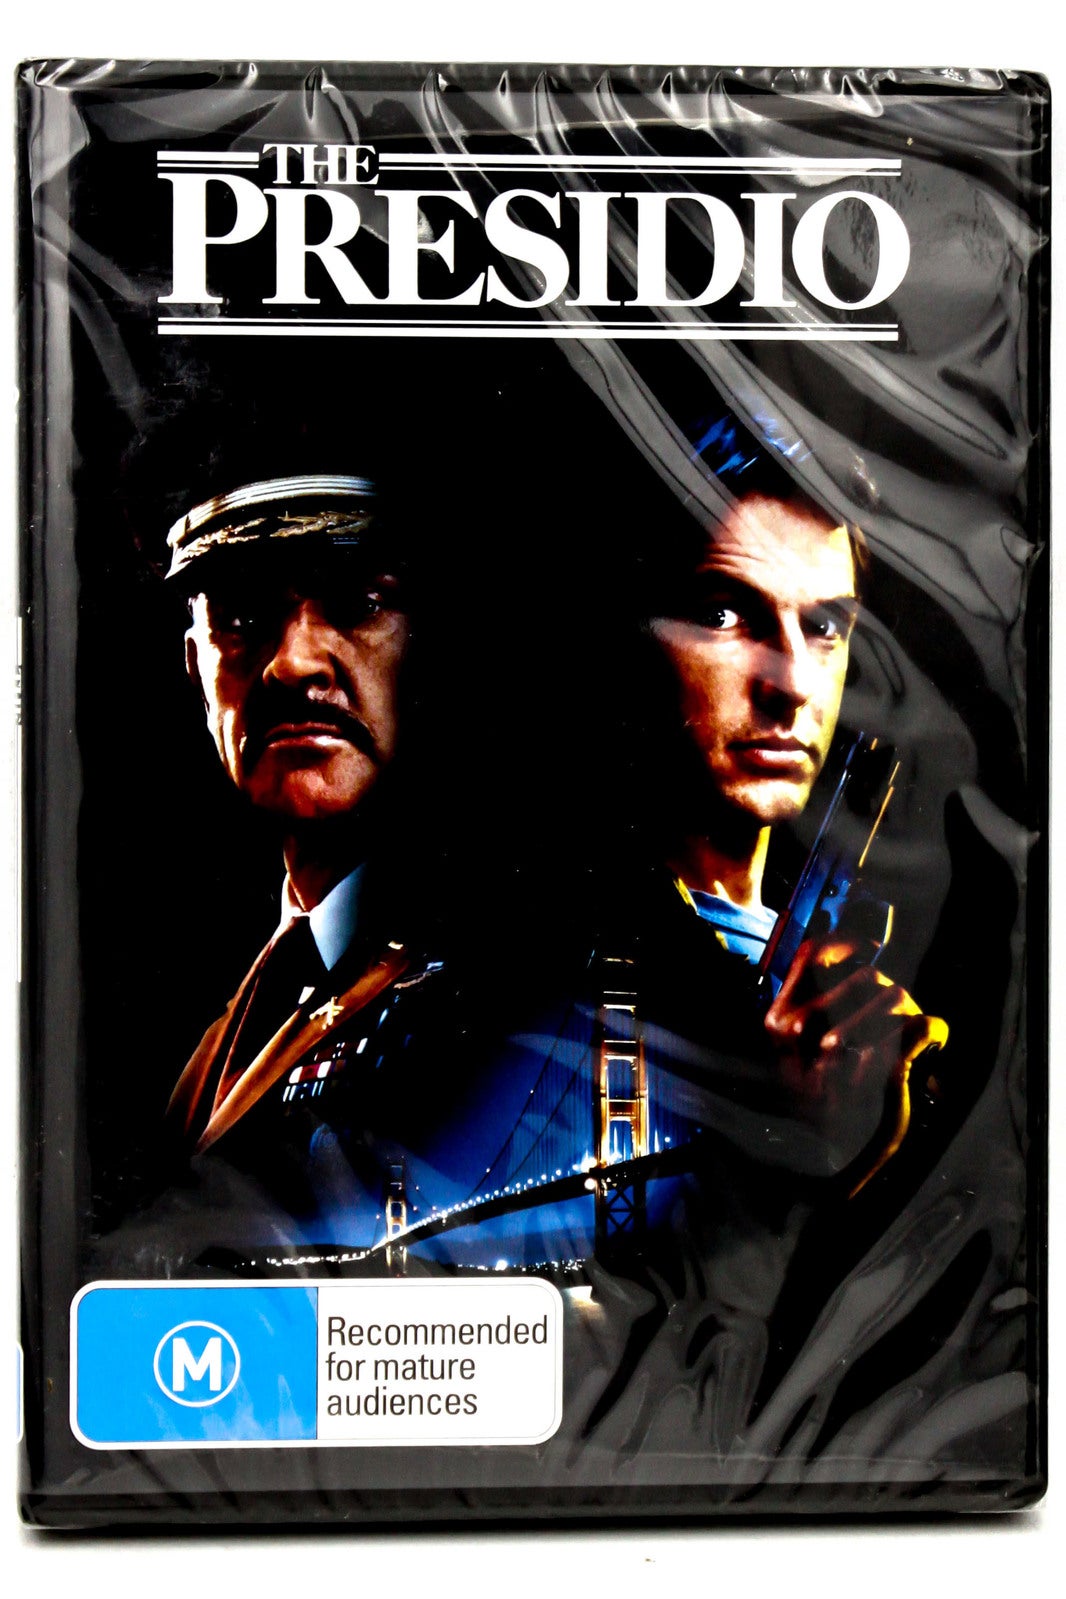 The Presidio DVD